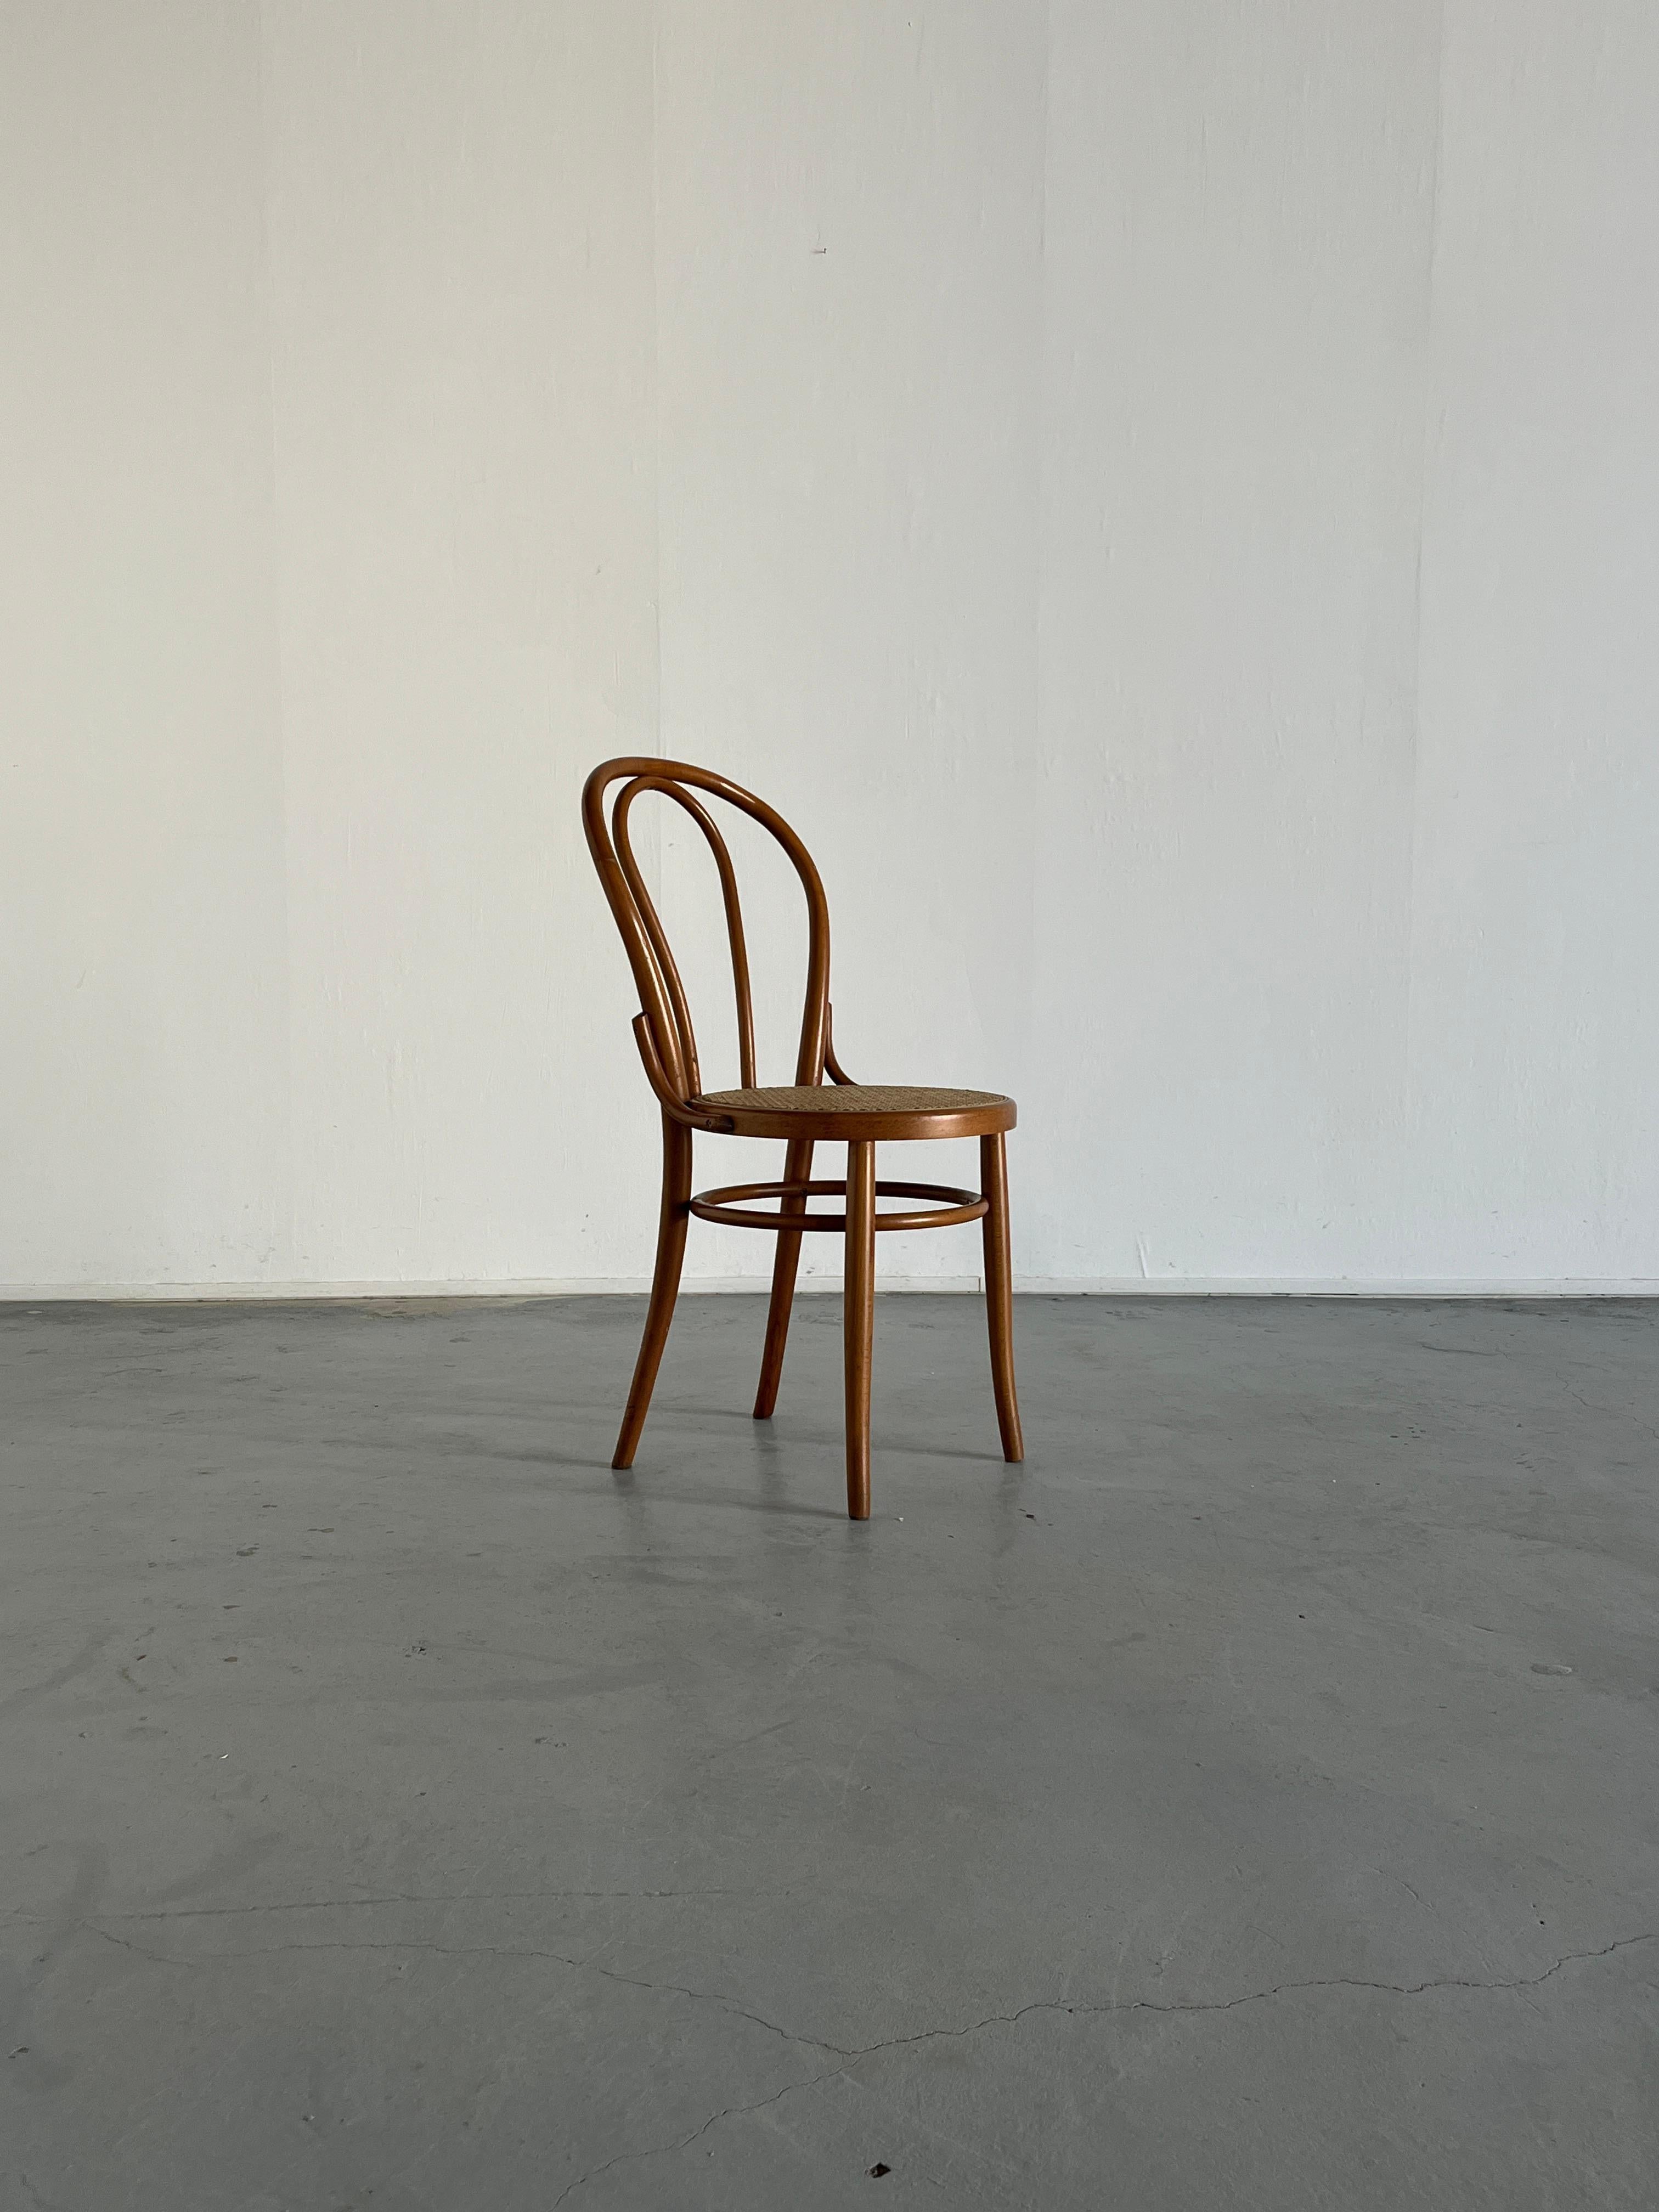 Une belle chaise en bois courbé de Thonet, dans le style du modèle populaire no. 18.

D'après les dimensions, les matériaux, le poids et le type de vis, il s'agit très certainement d'une chaise Thonet n° 18 originale produite par l'usine